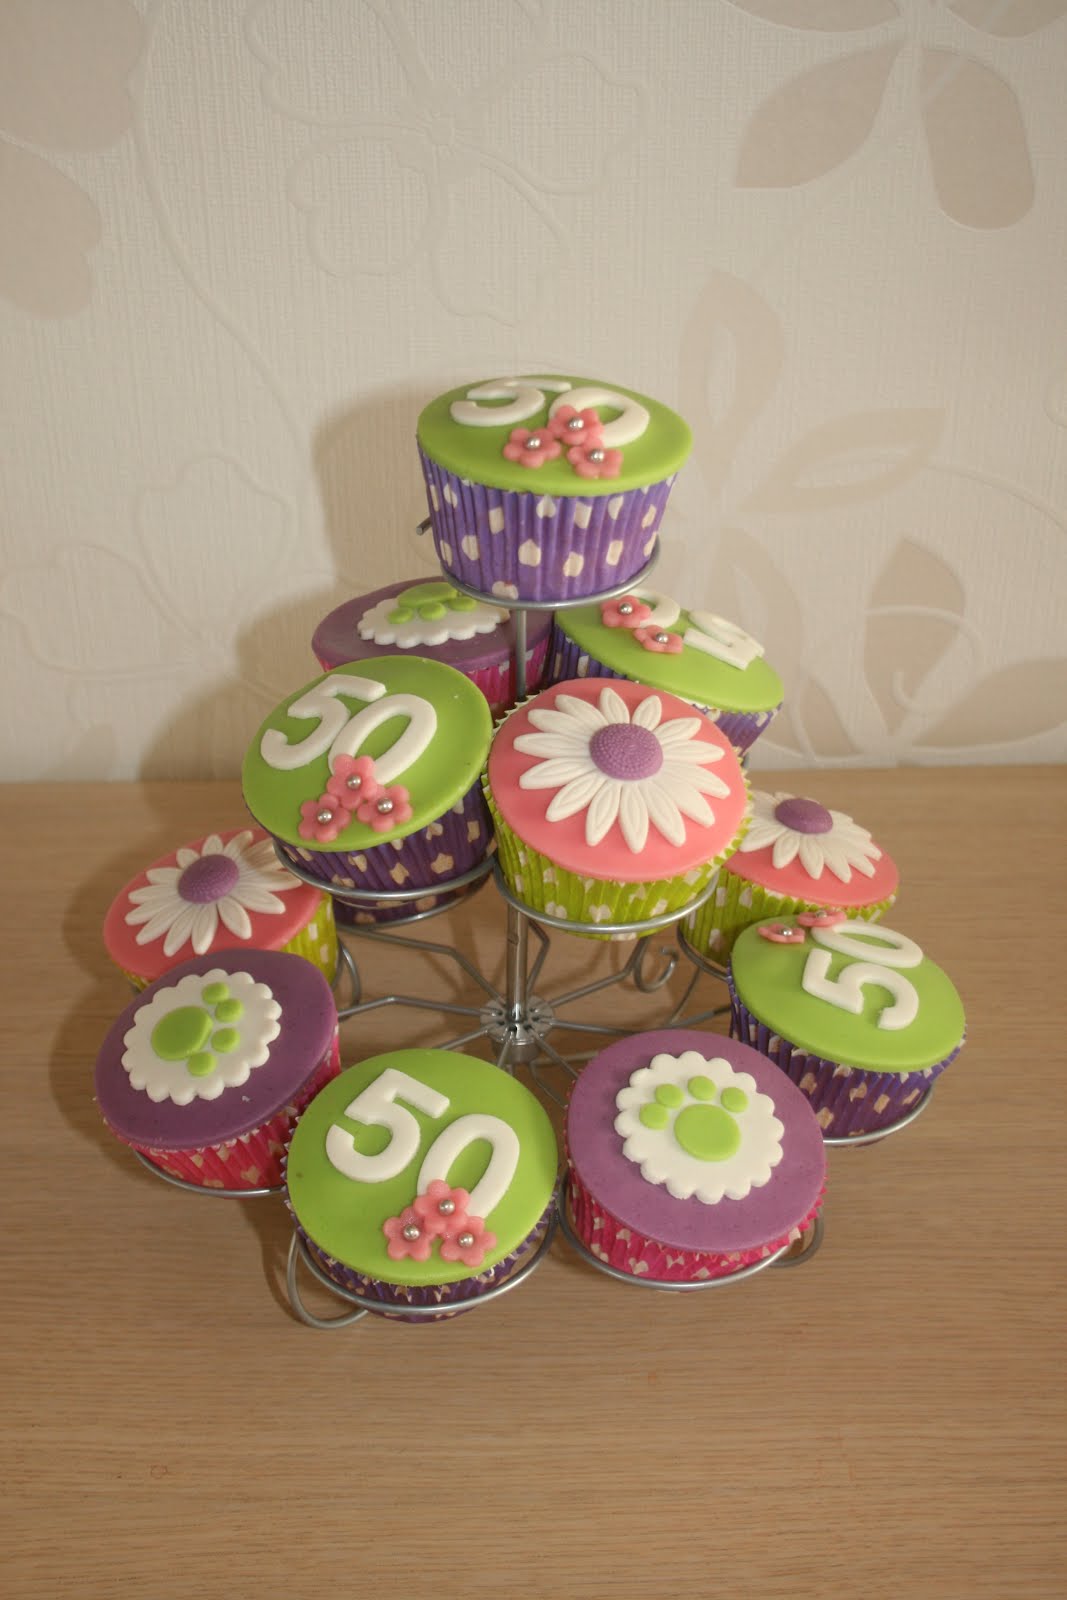 Wonderbaarlijk Cupcakes 50 jaar! PB-63